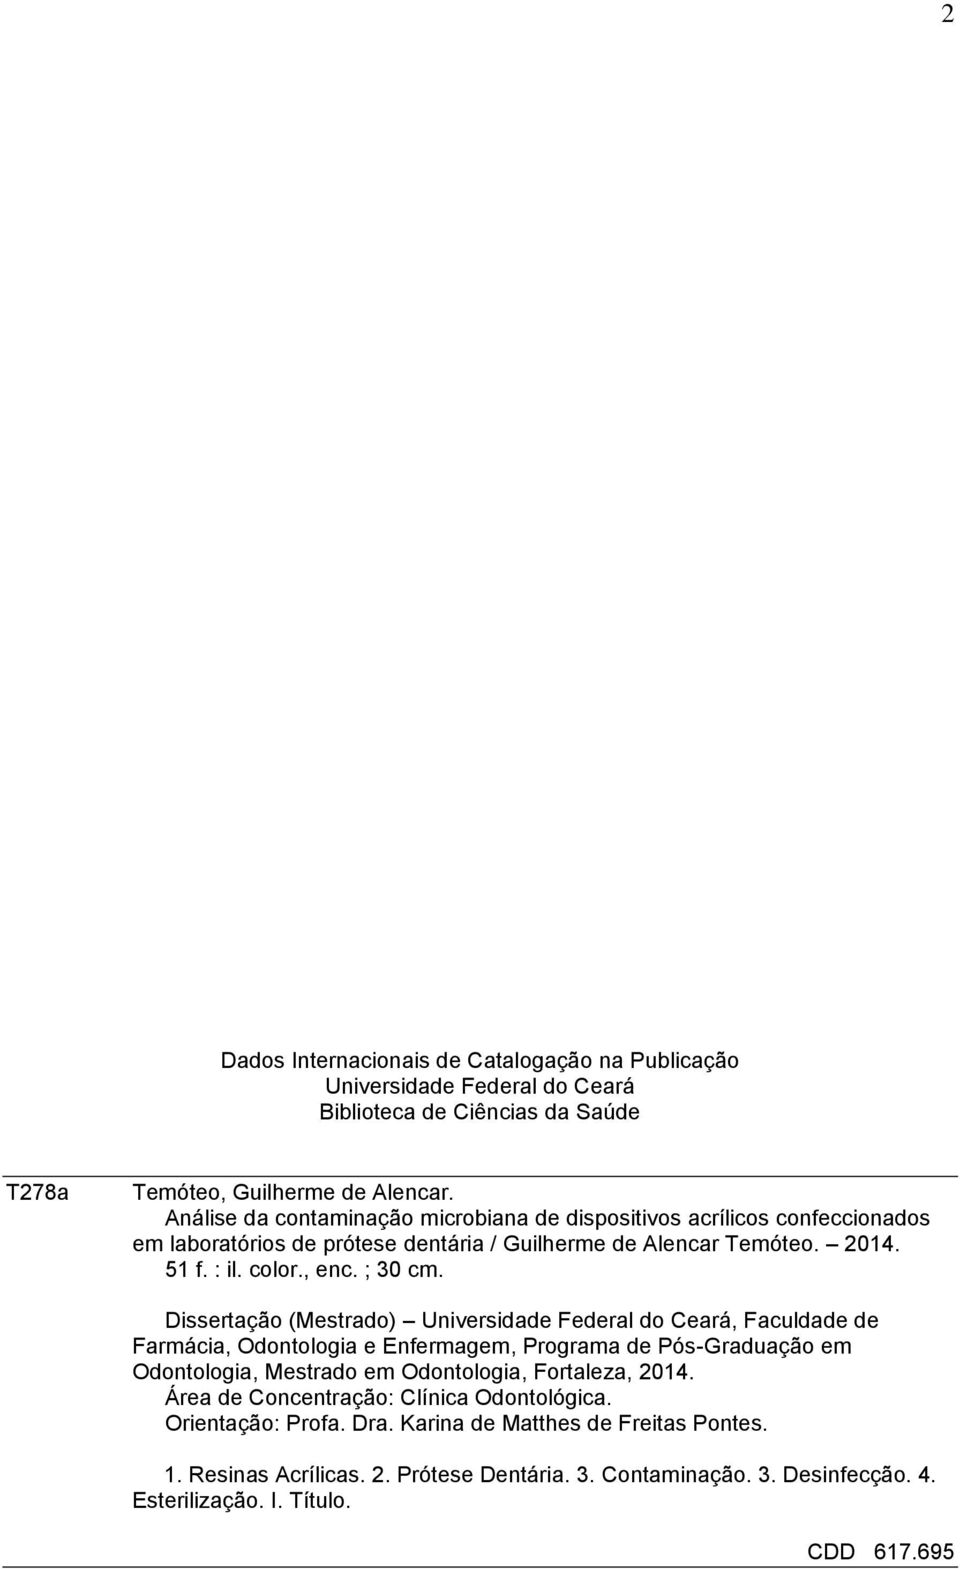 Dissertação (Mestrado) Universidade Federal do Ceará, Faculdade de Farmácia, Odontologia e Enfermagem, Programa de Pós-Graduação em Odontologia, Mestrado em Odontologia, Fortaleza, 2014.